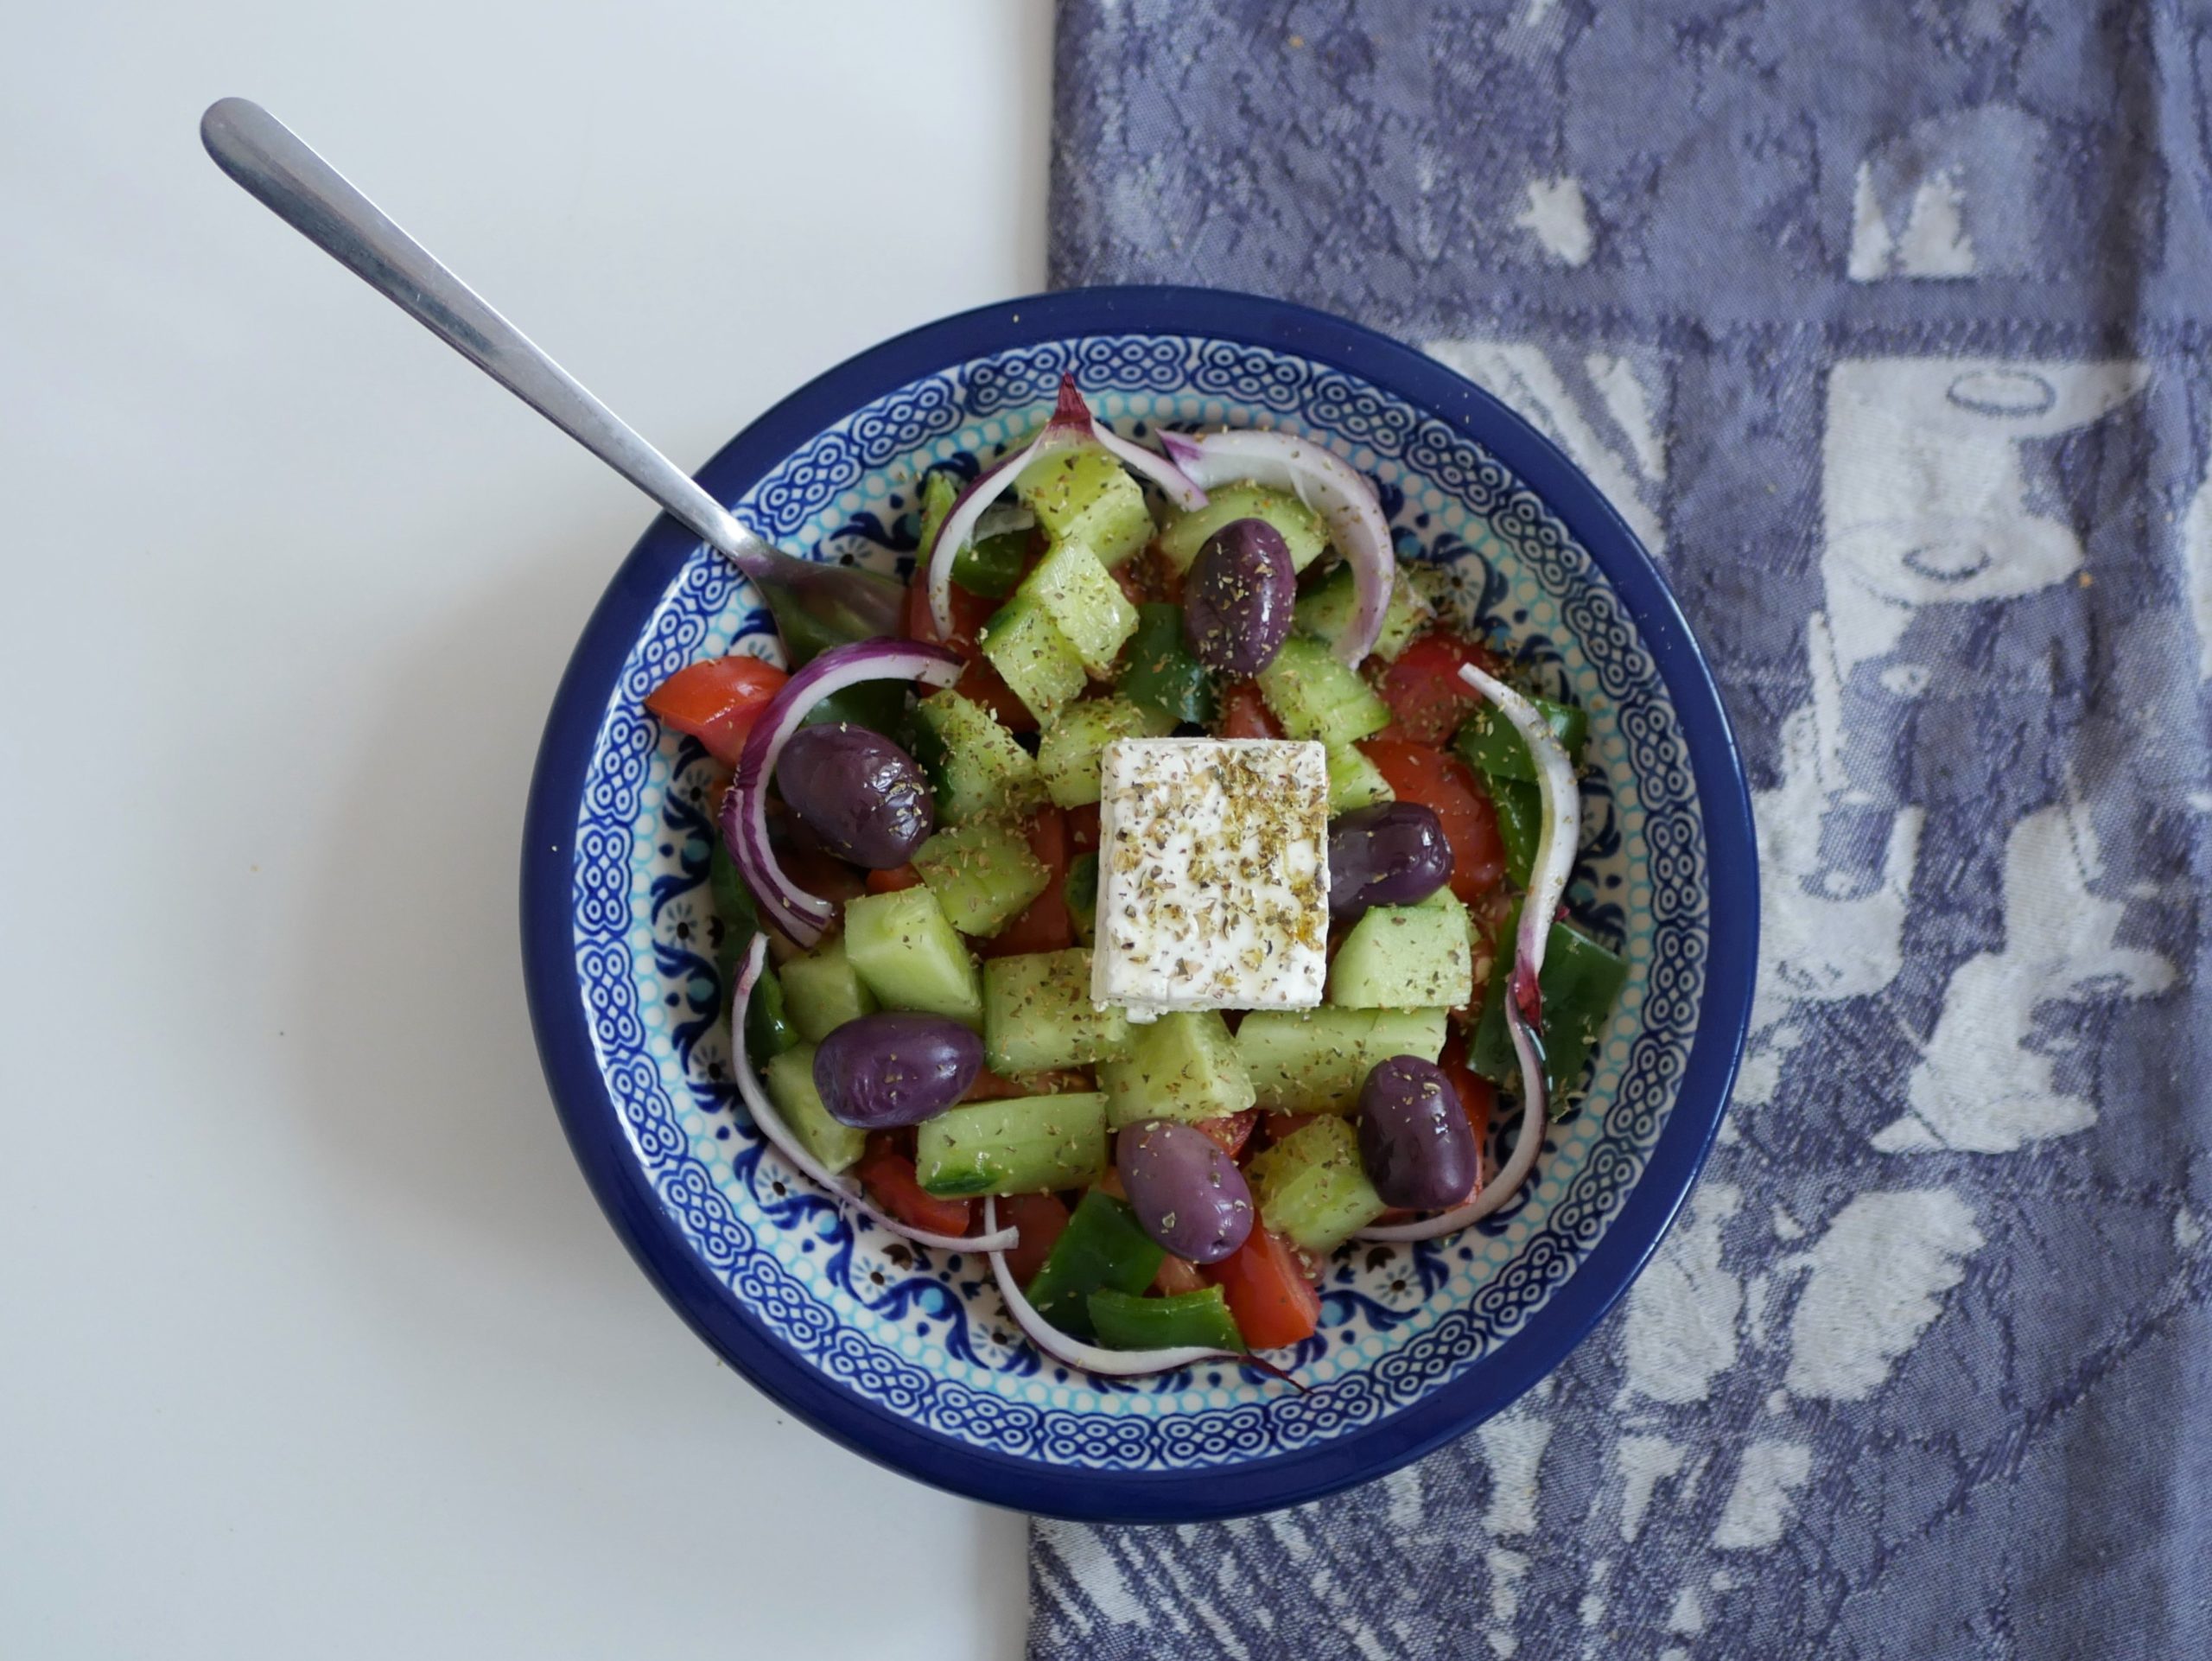 Salade grecque (horiatiki salata)